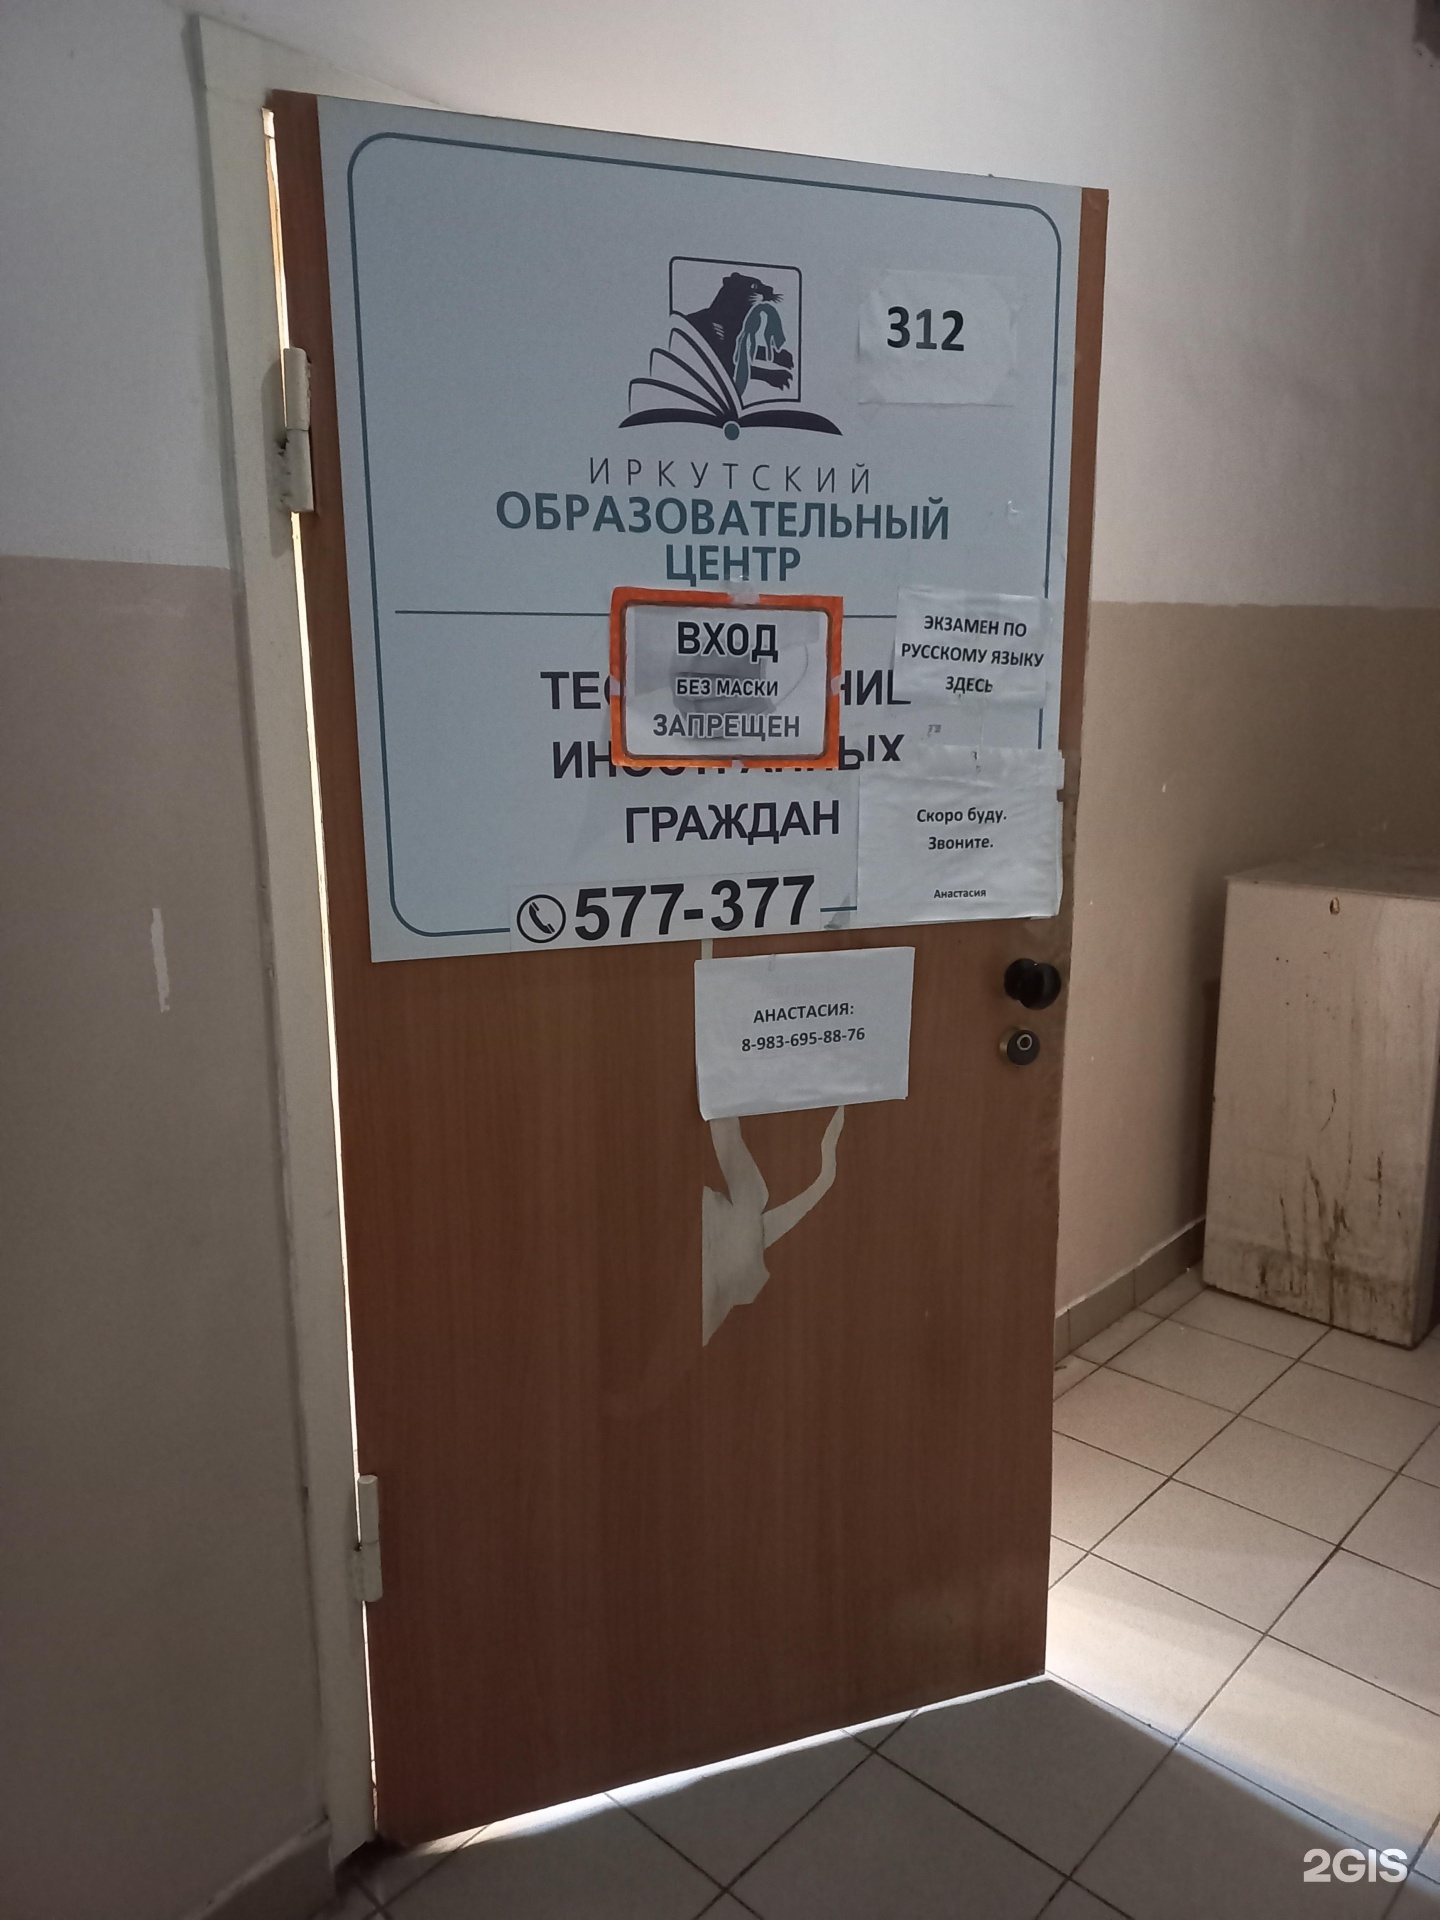 Учебный центр охрана Иркутск.